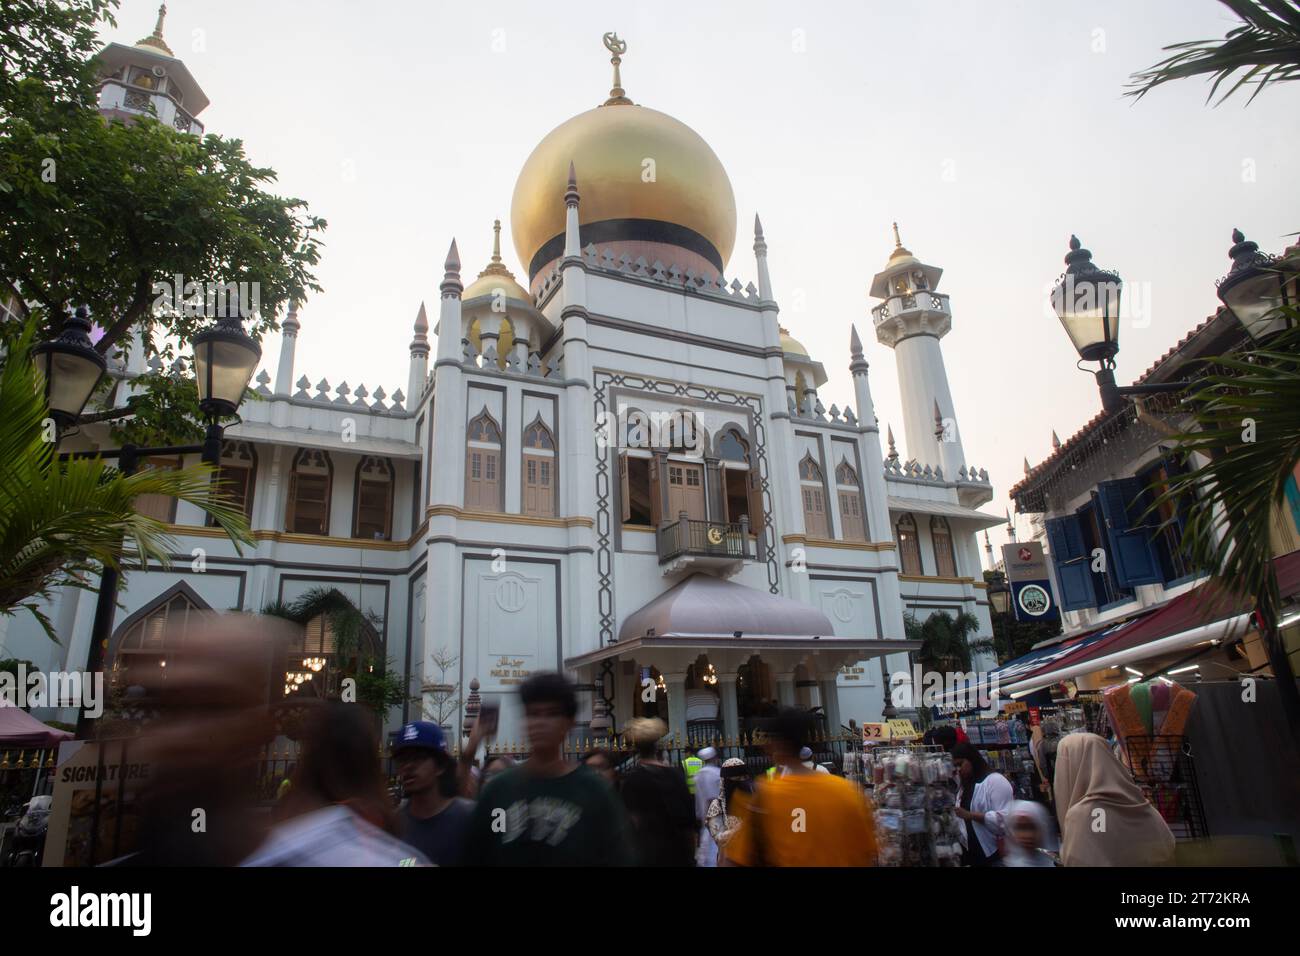 Voll mit Menschen vor der Sultan Moschee, ein sehr beliebter Ort für die muslimische Gemeinschaft und Touristen in Singapur. Stockfoto